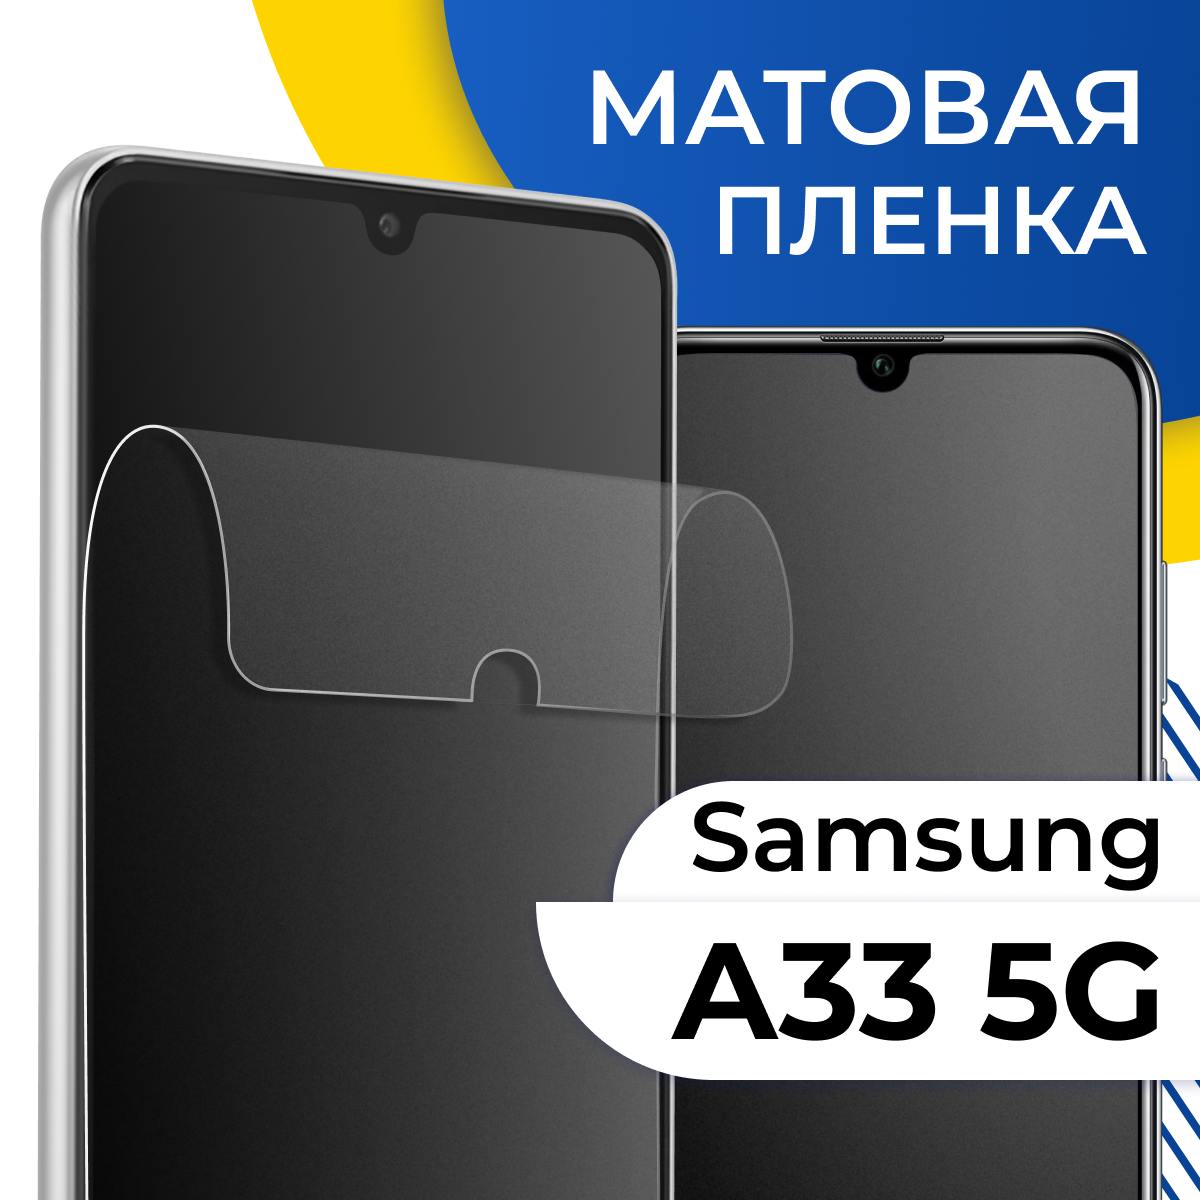 Комплект 2 шт. Матовая гидрогелевая пленка для телефона Samsung Galaxy A33 5G / Самовосстанавливающаяся защитная пленка на смартфон Самсунг Галакси А33 5Г